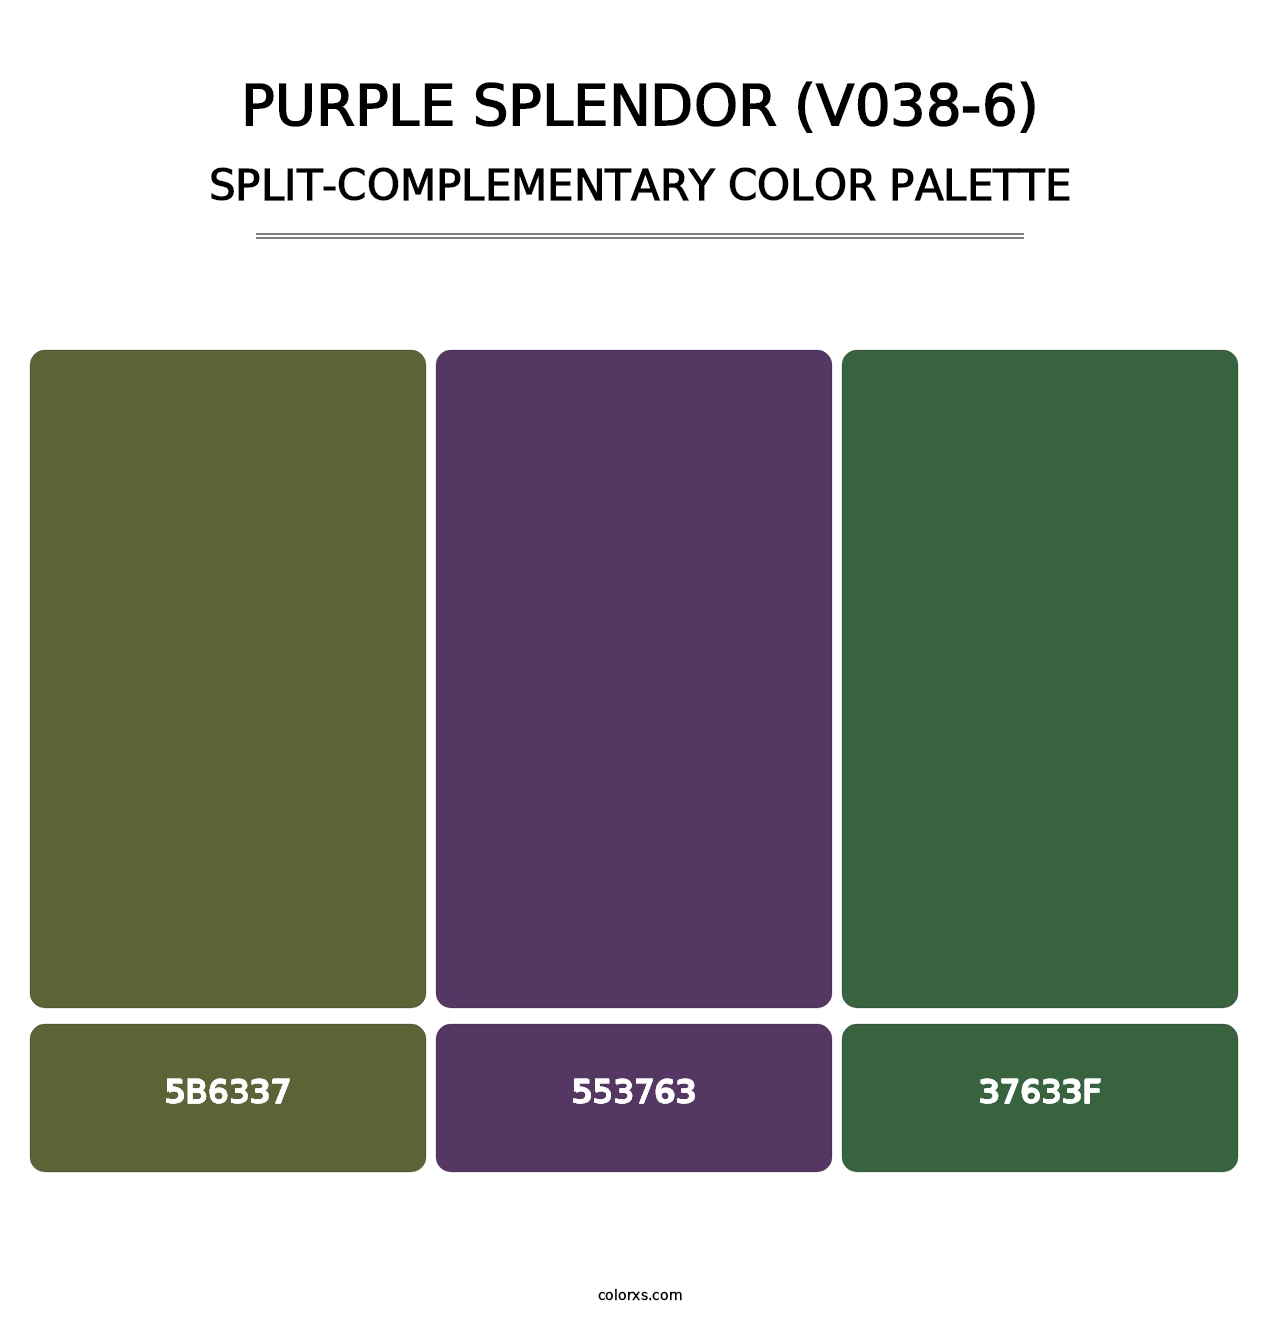 Purple Splendor (V038-6) - Split-Complementary Color Palette